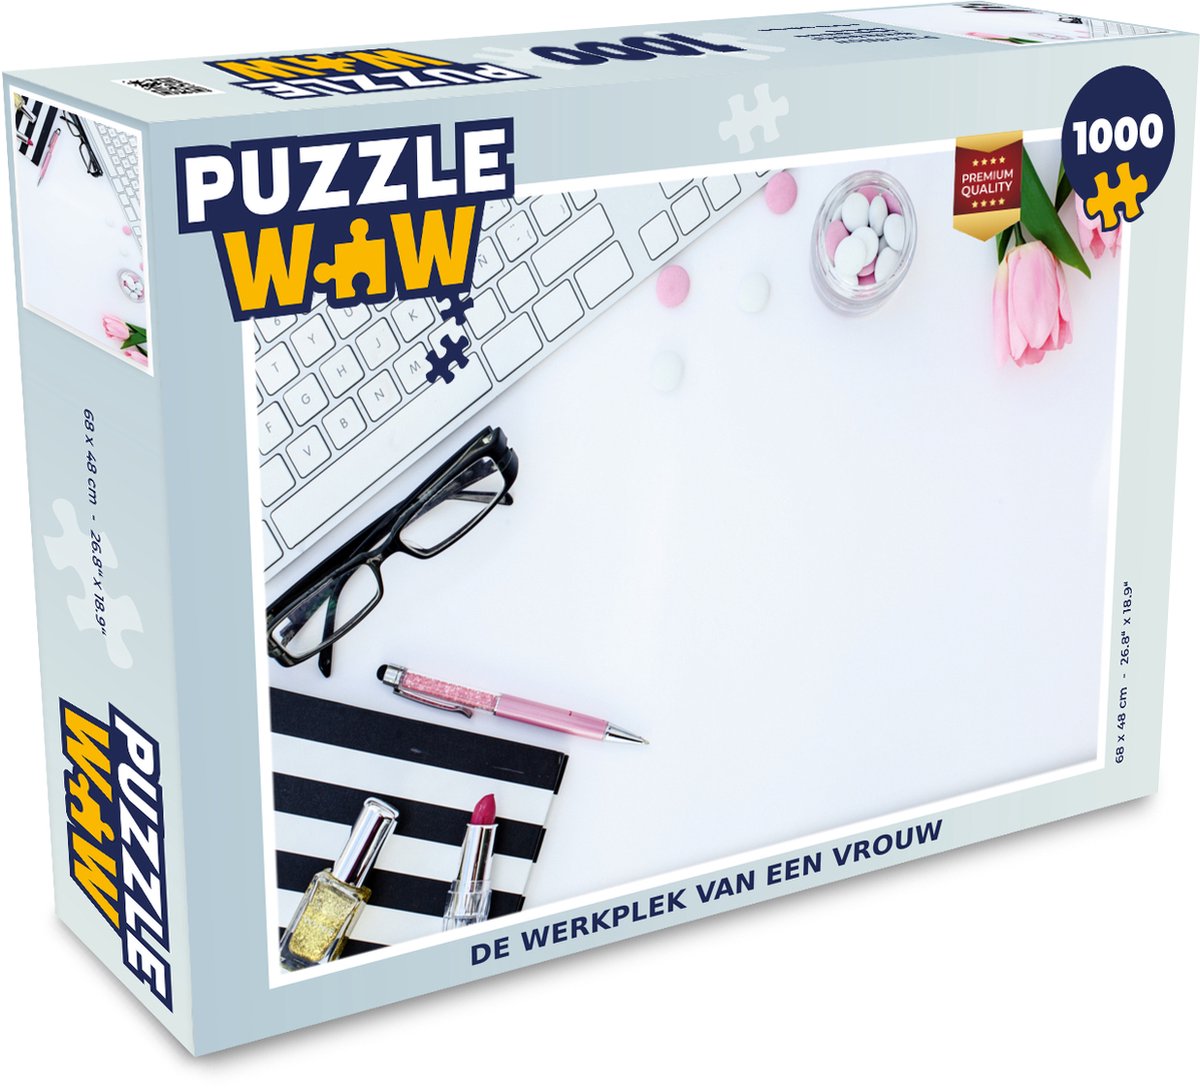 Puzzel De werkplek van een vrouw - Legpuzzel - Puzzel 1000 stukjes  volwassenen | bol.com